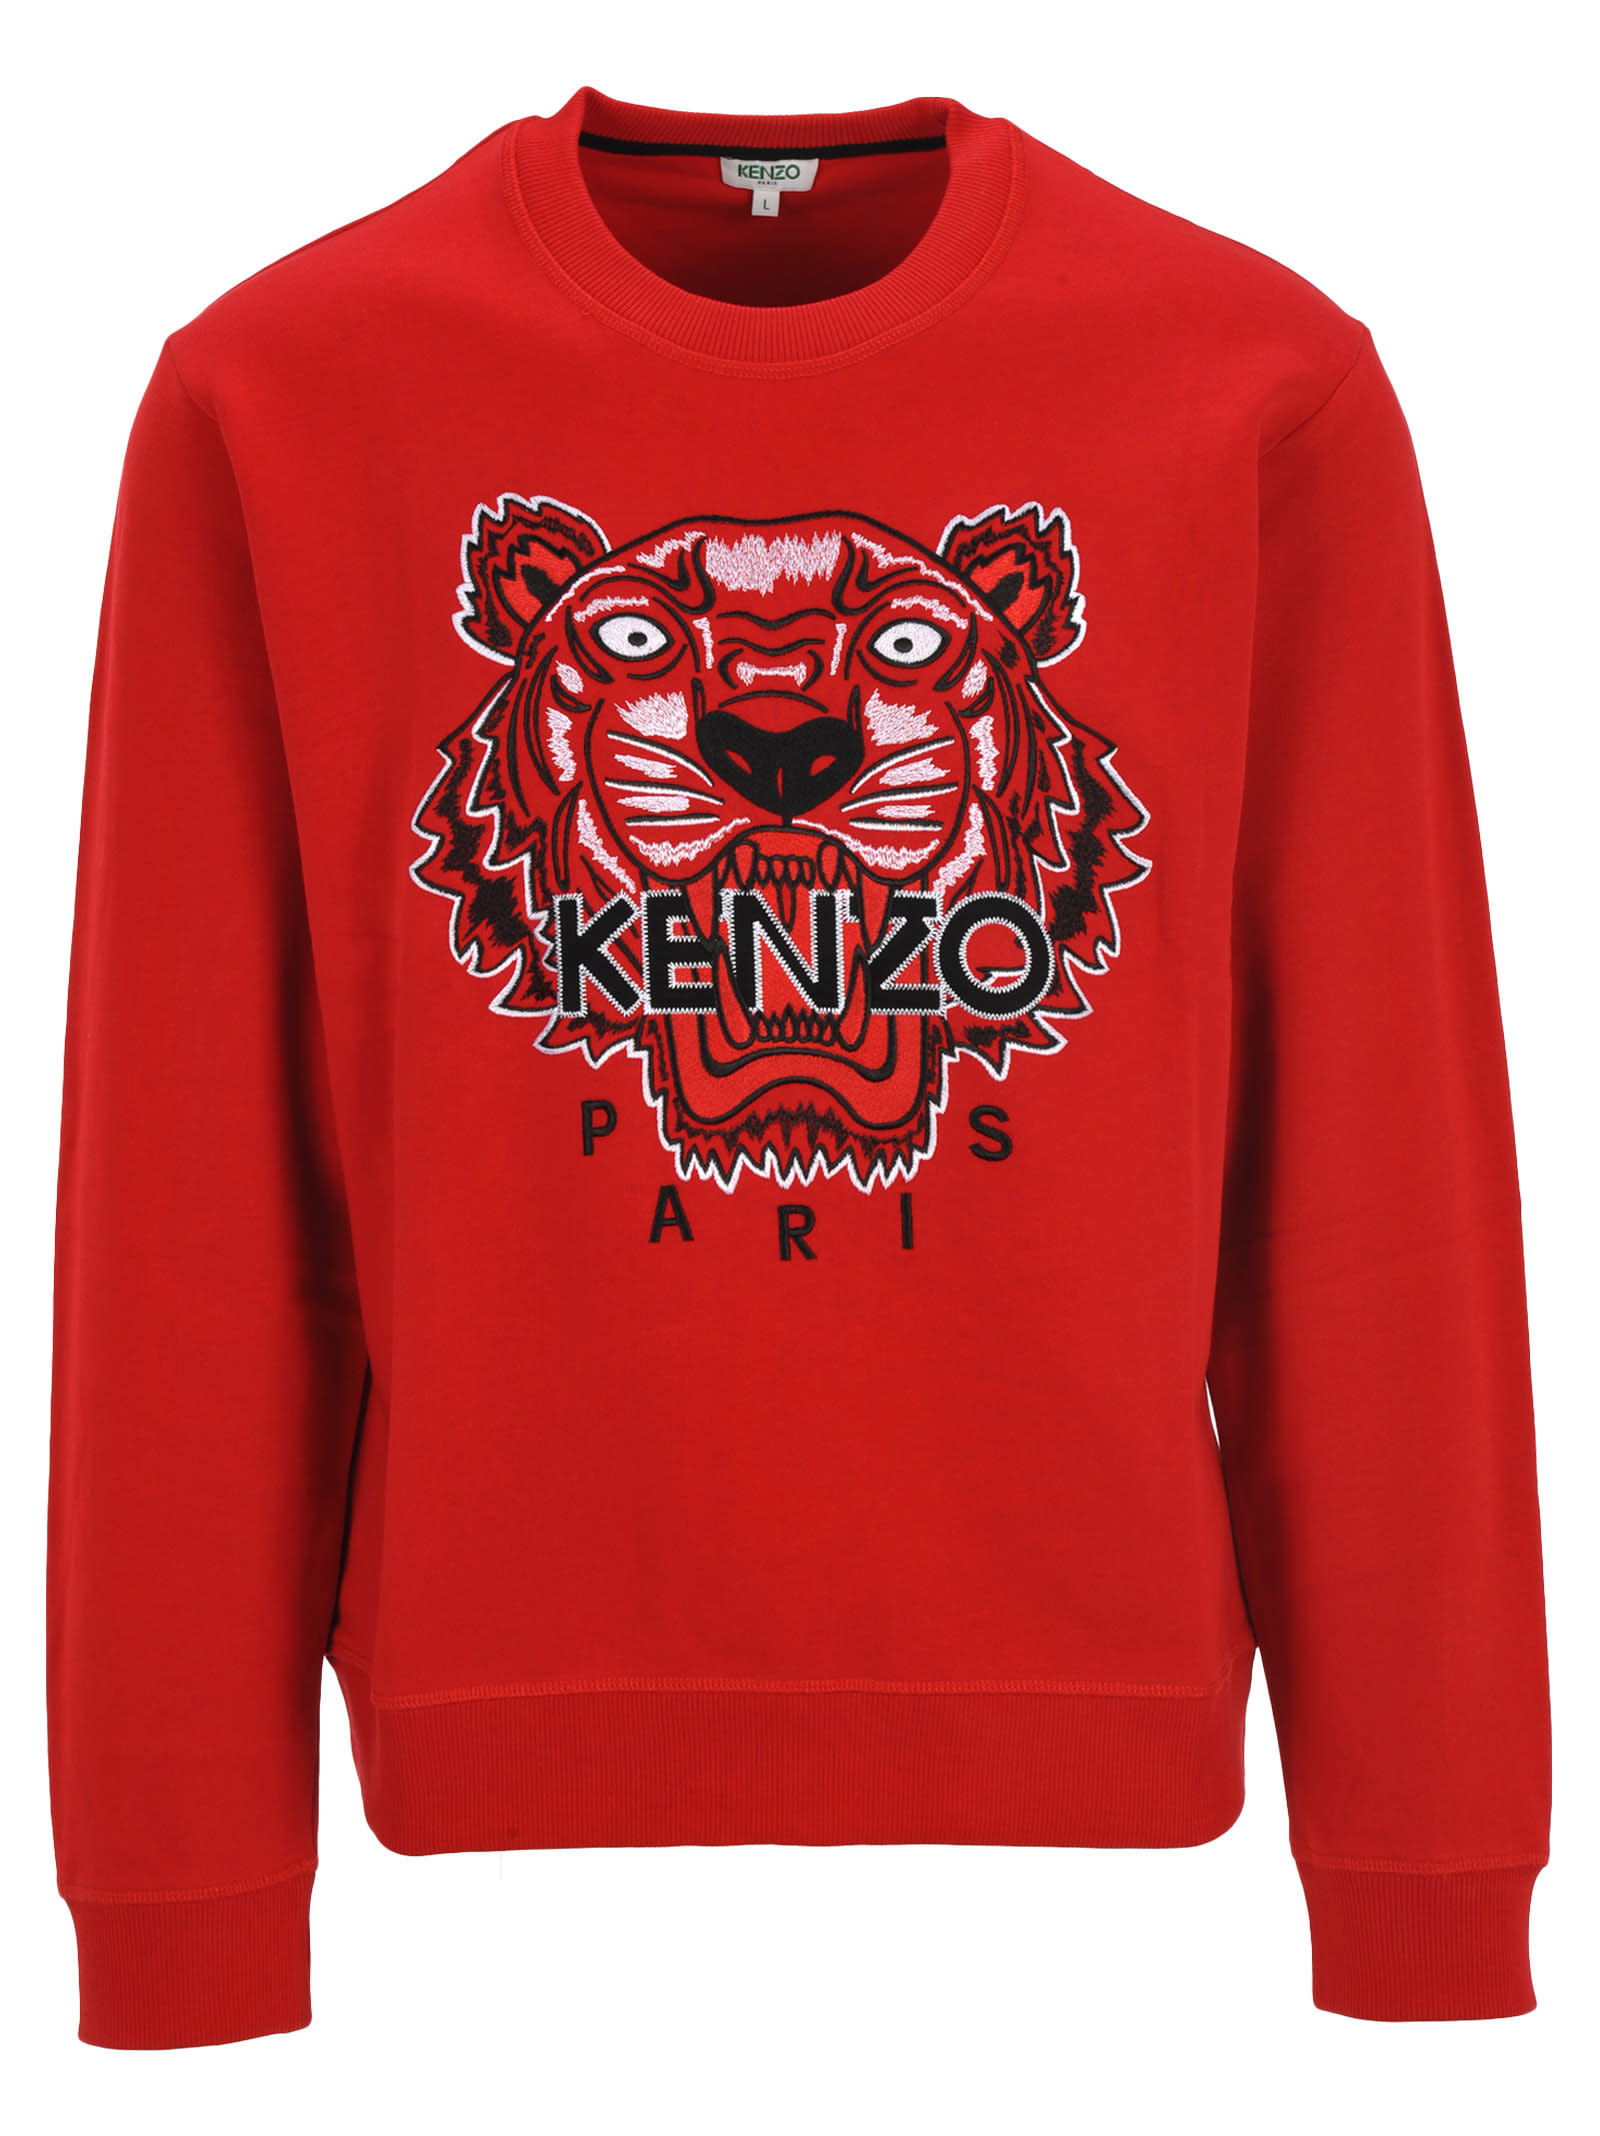 kenzo embroidered shirt